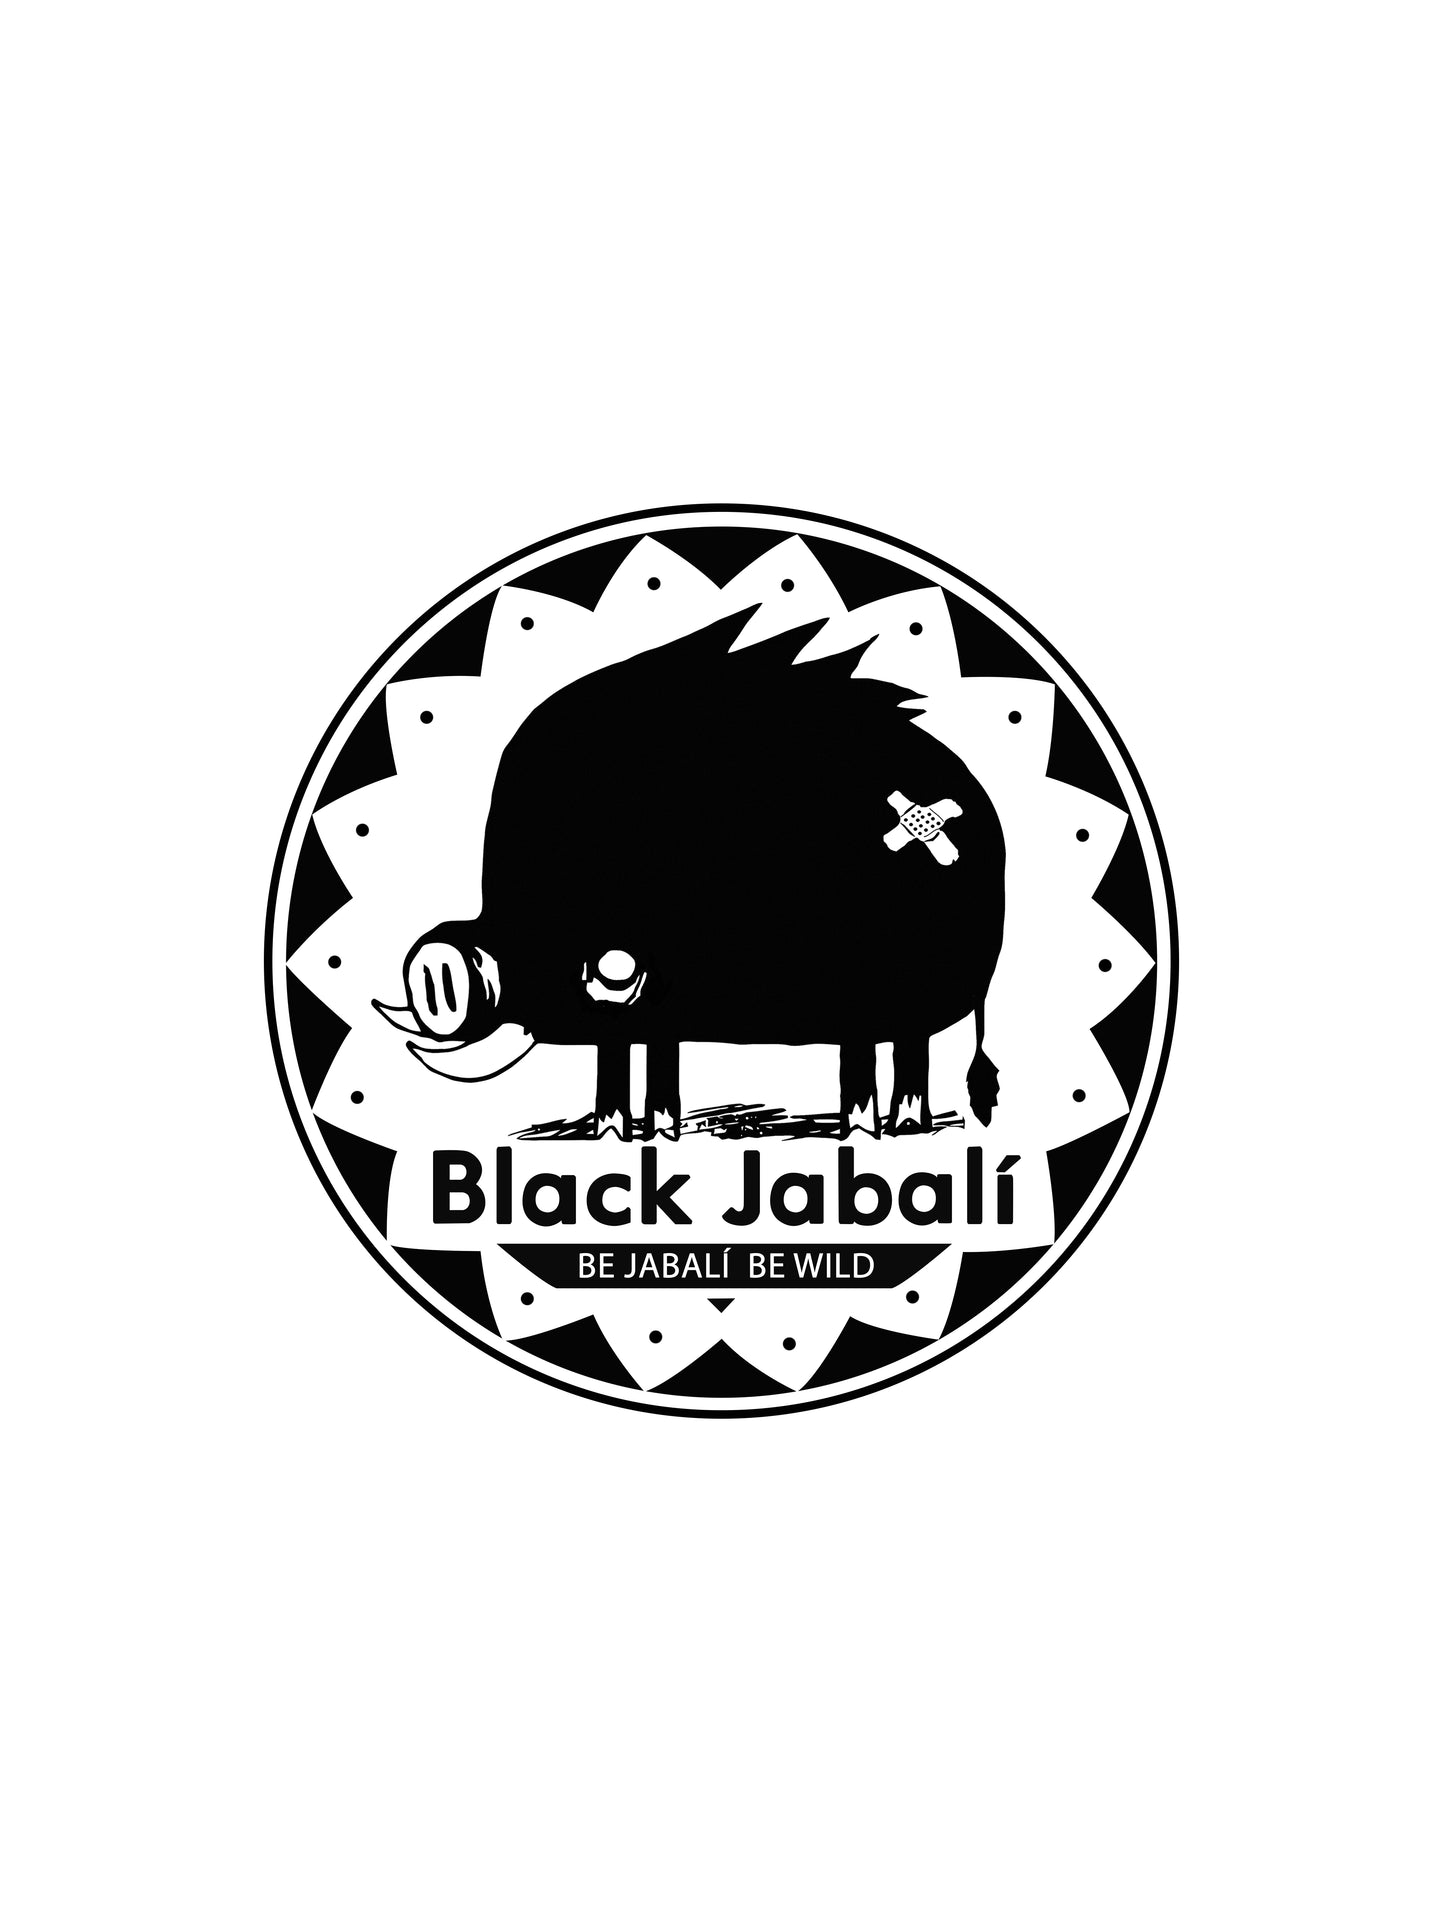 "Jabalí Spirit"